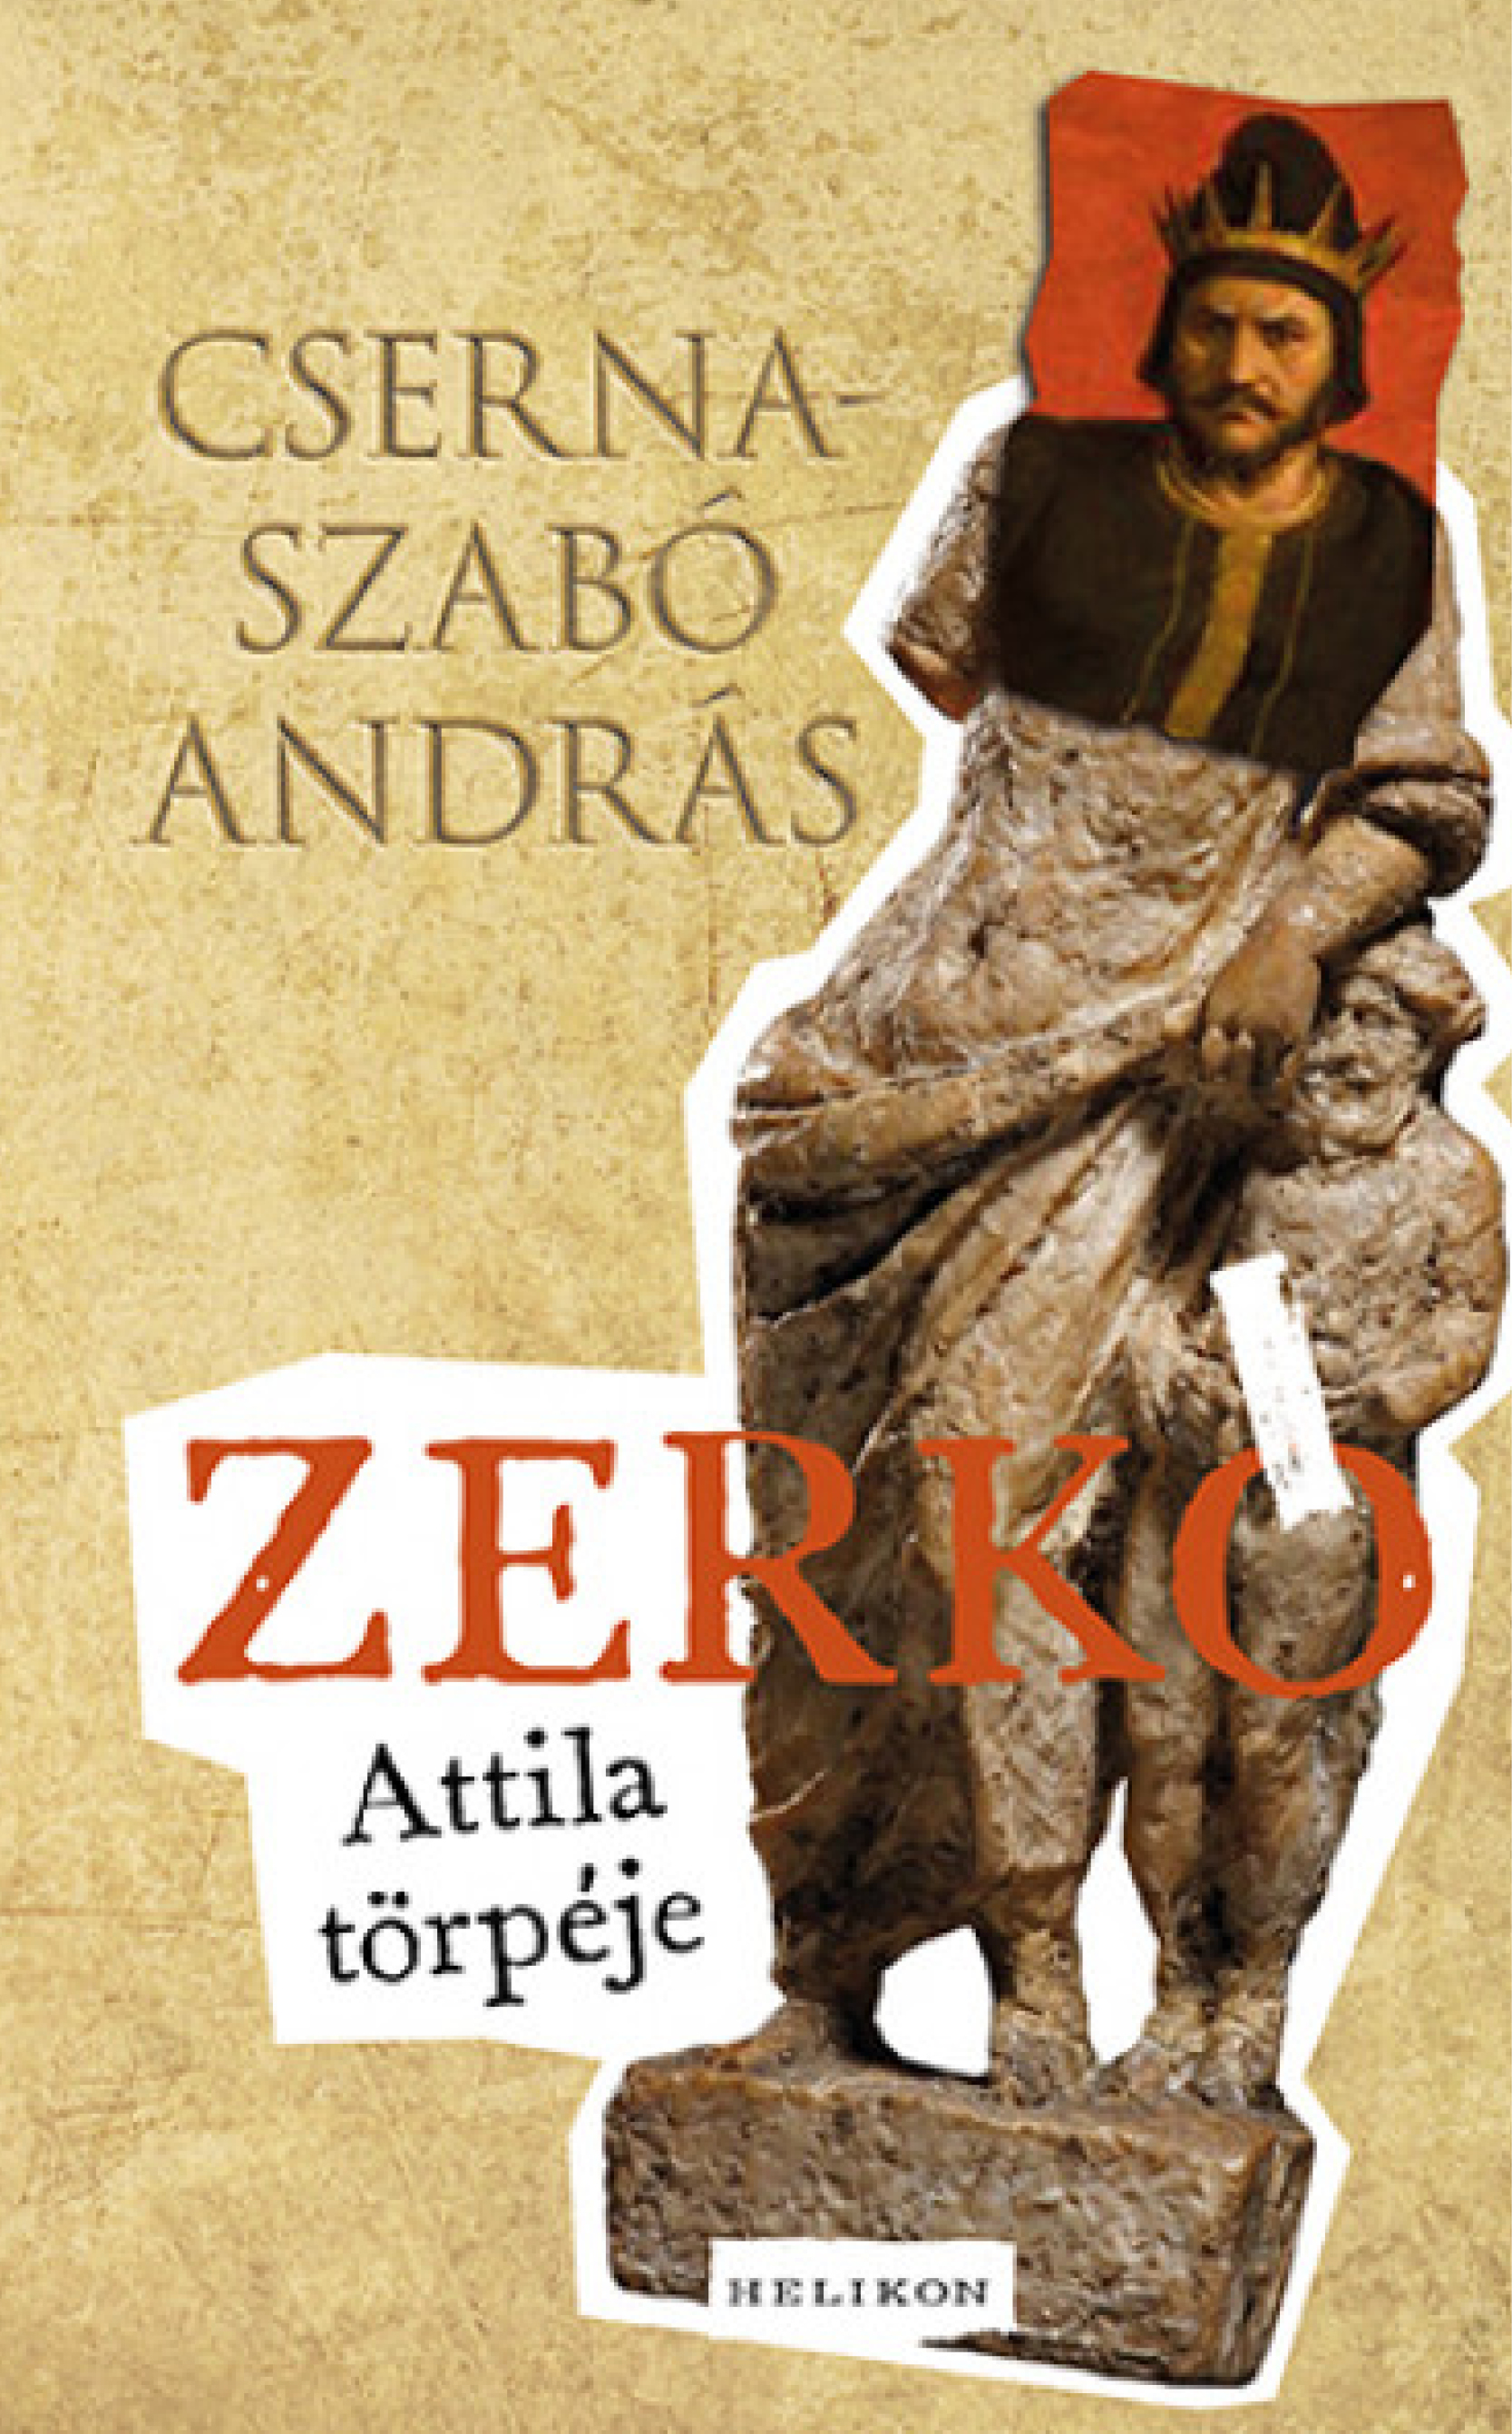 Cserna-Szabó András: Zerkó - Attila törpéje